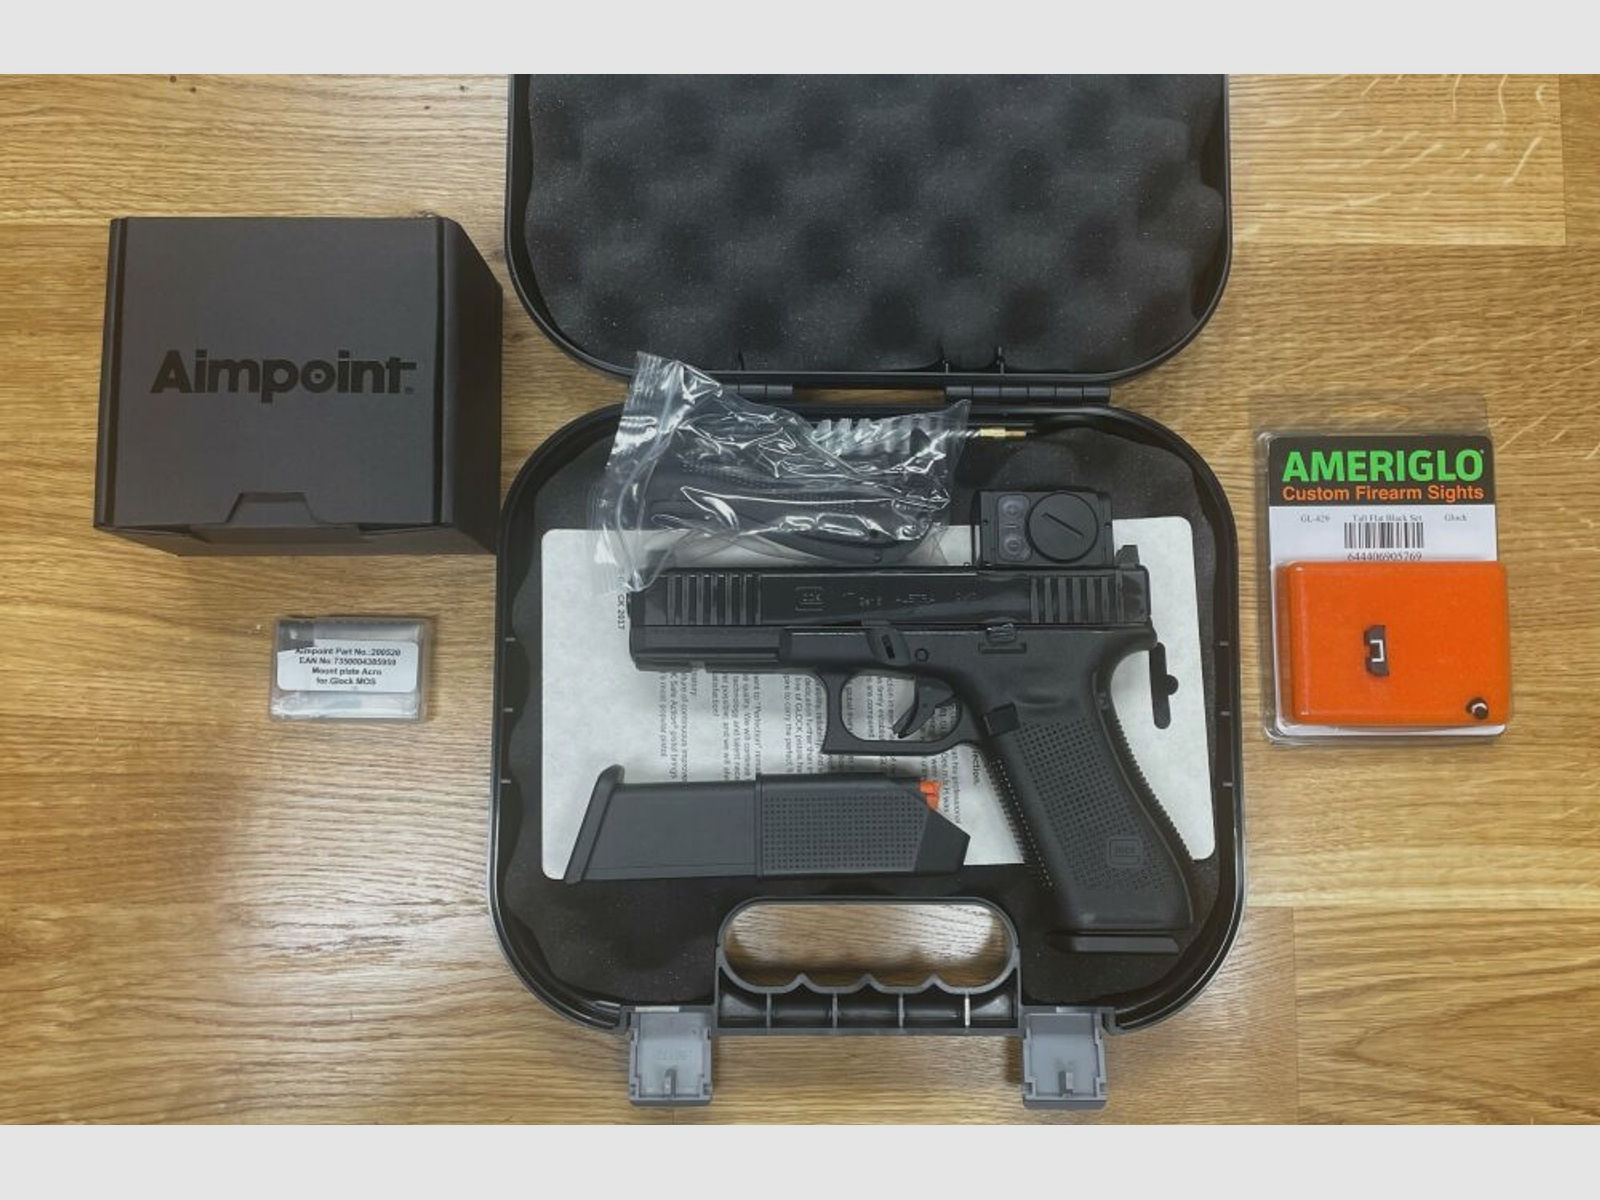 Glock 17 Gen5 MOS mit Aimpoint ACRO P-2 + AMERIGLO SD Sights	 inkl. Aimpoint Adapter Platte für Aimpoint, alles montiert! Nachtsichtstufen